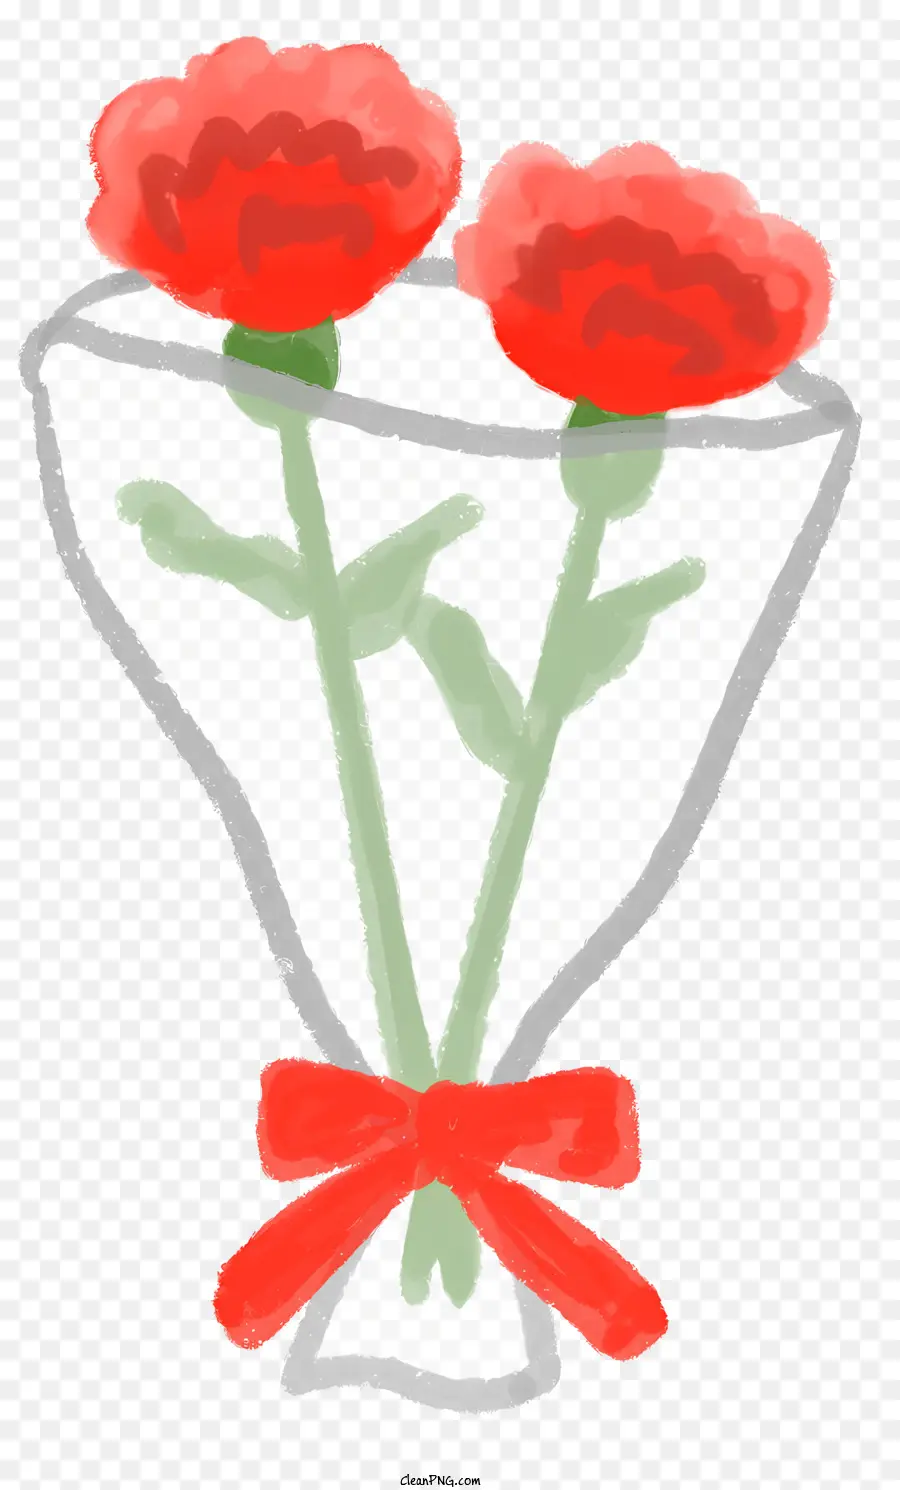 màu đỏ băng - Bó hoa cẩm chướng màu đỏ với bình thủy tinh và ruy băng